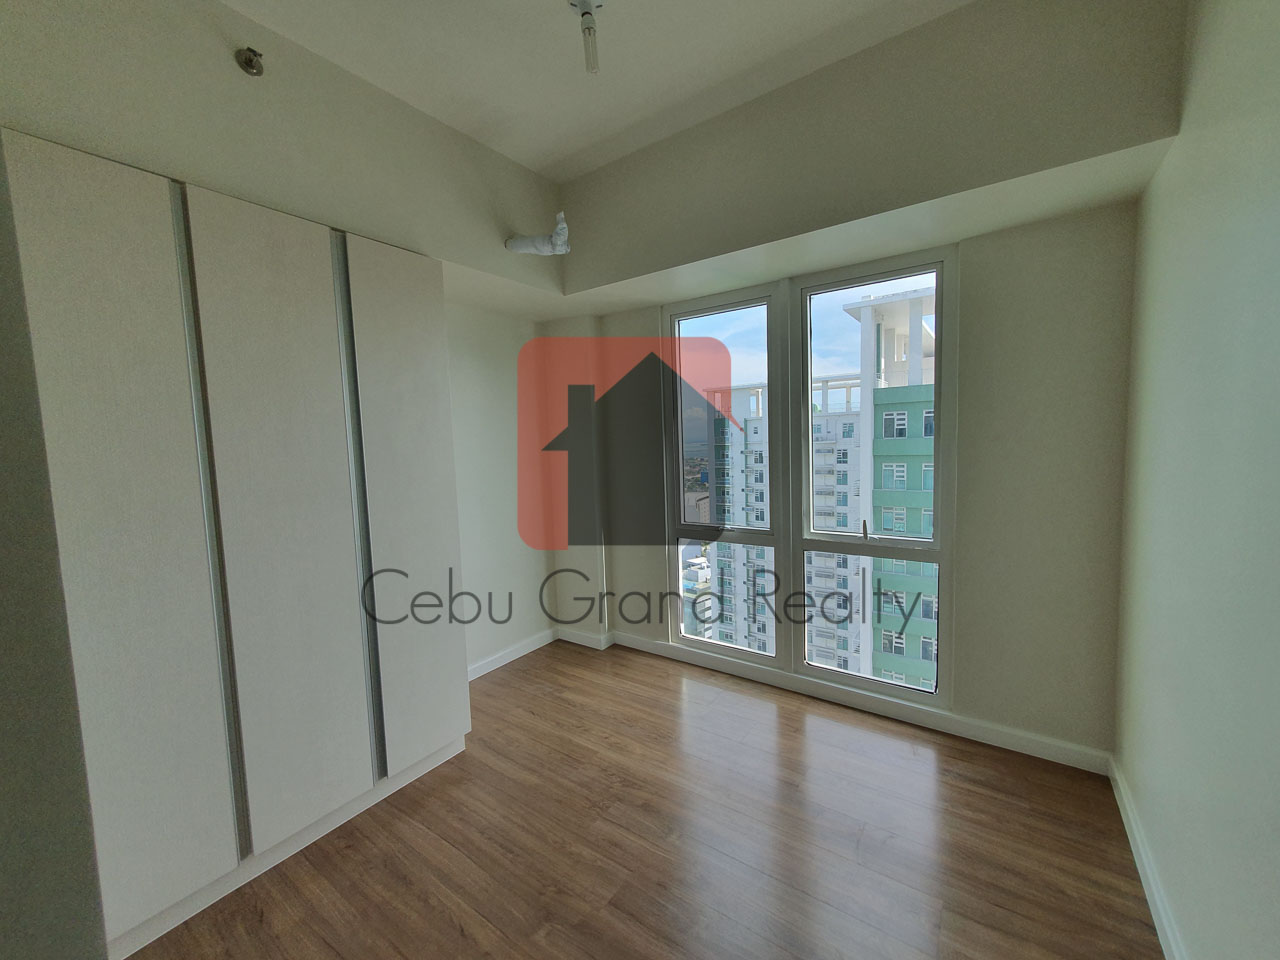 SRBS2 2 Bedroom Condo for Sale in Cebu Business Park Cebu Grand Realty-8